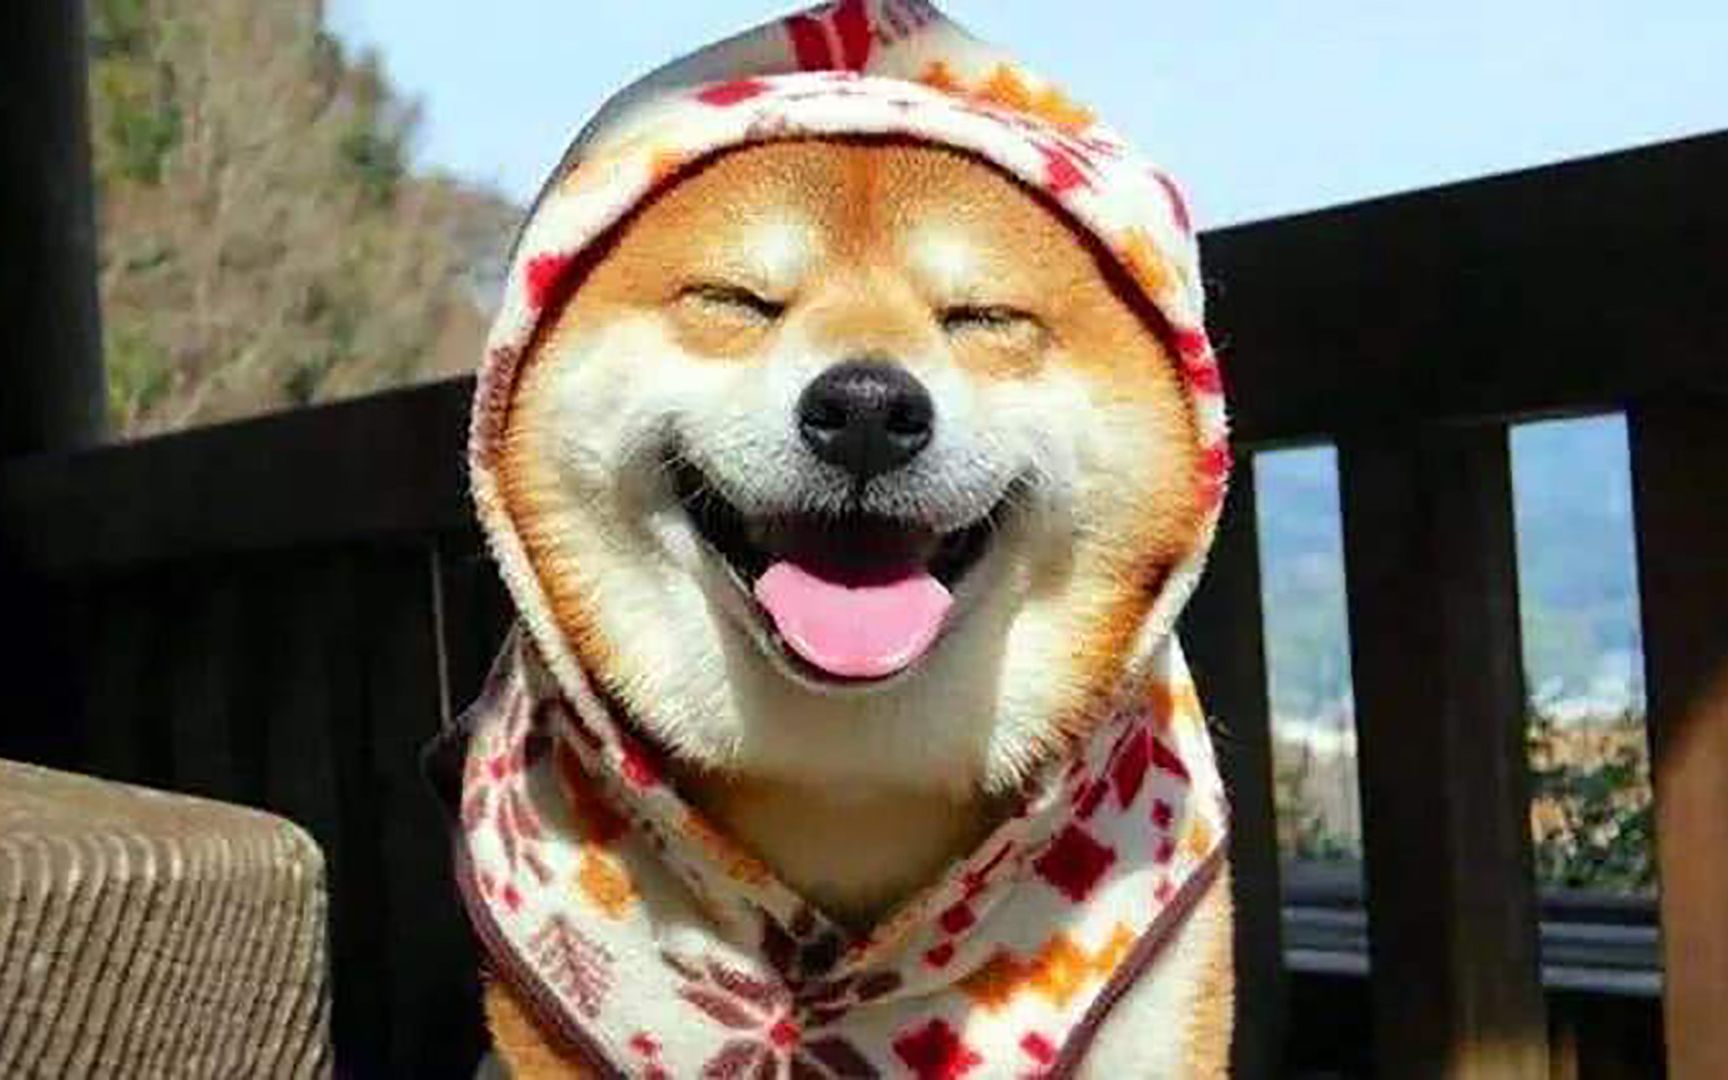 【汪星人/搞笑】这可能是我见过最可爱的秋田犬了!